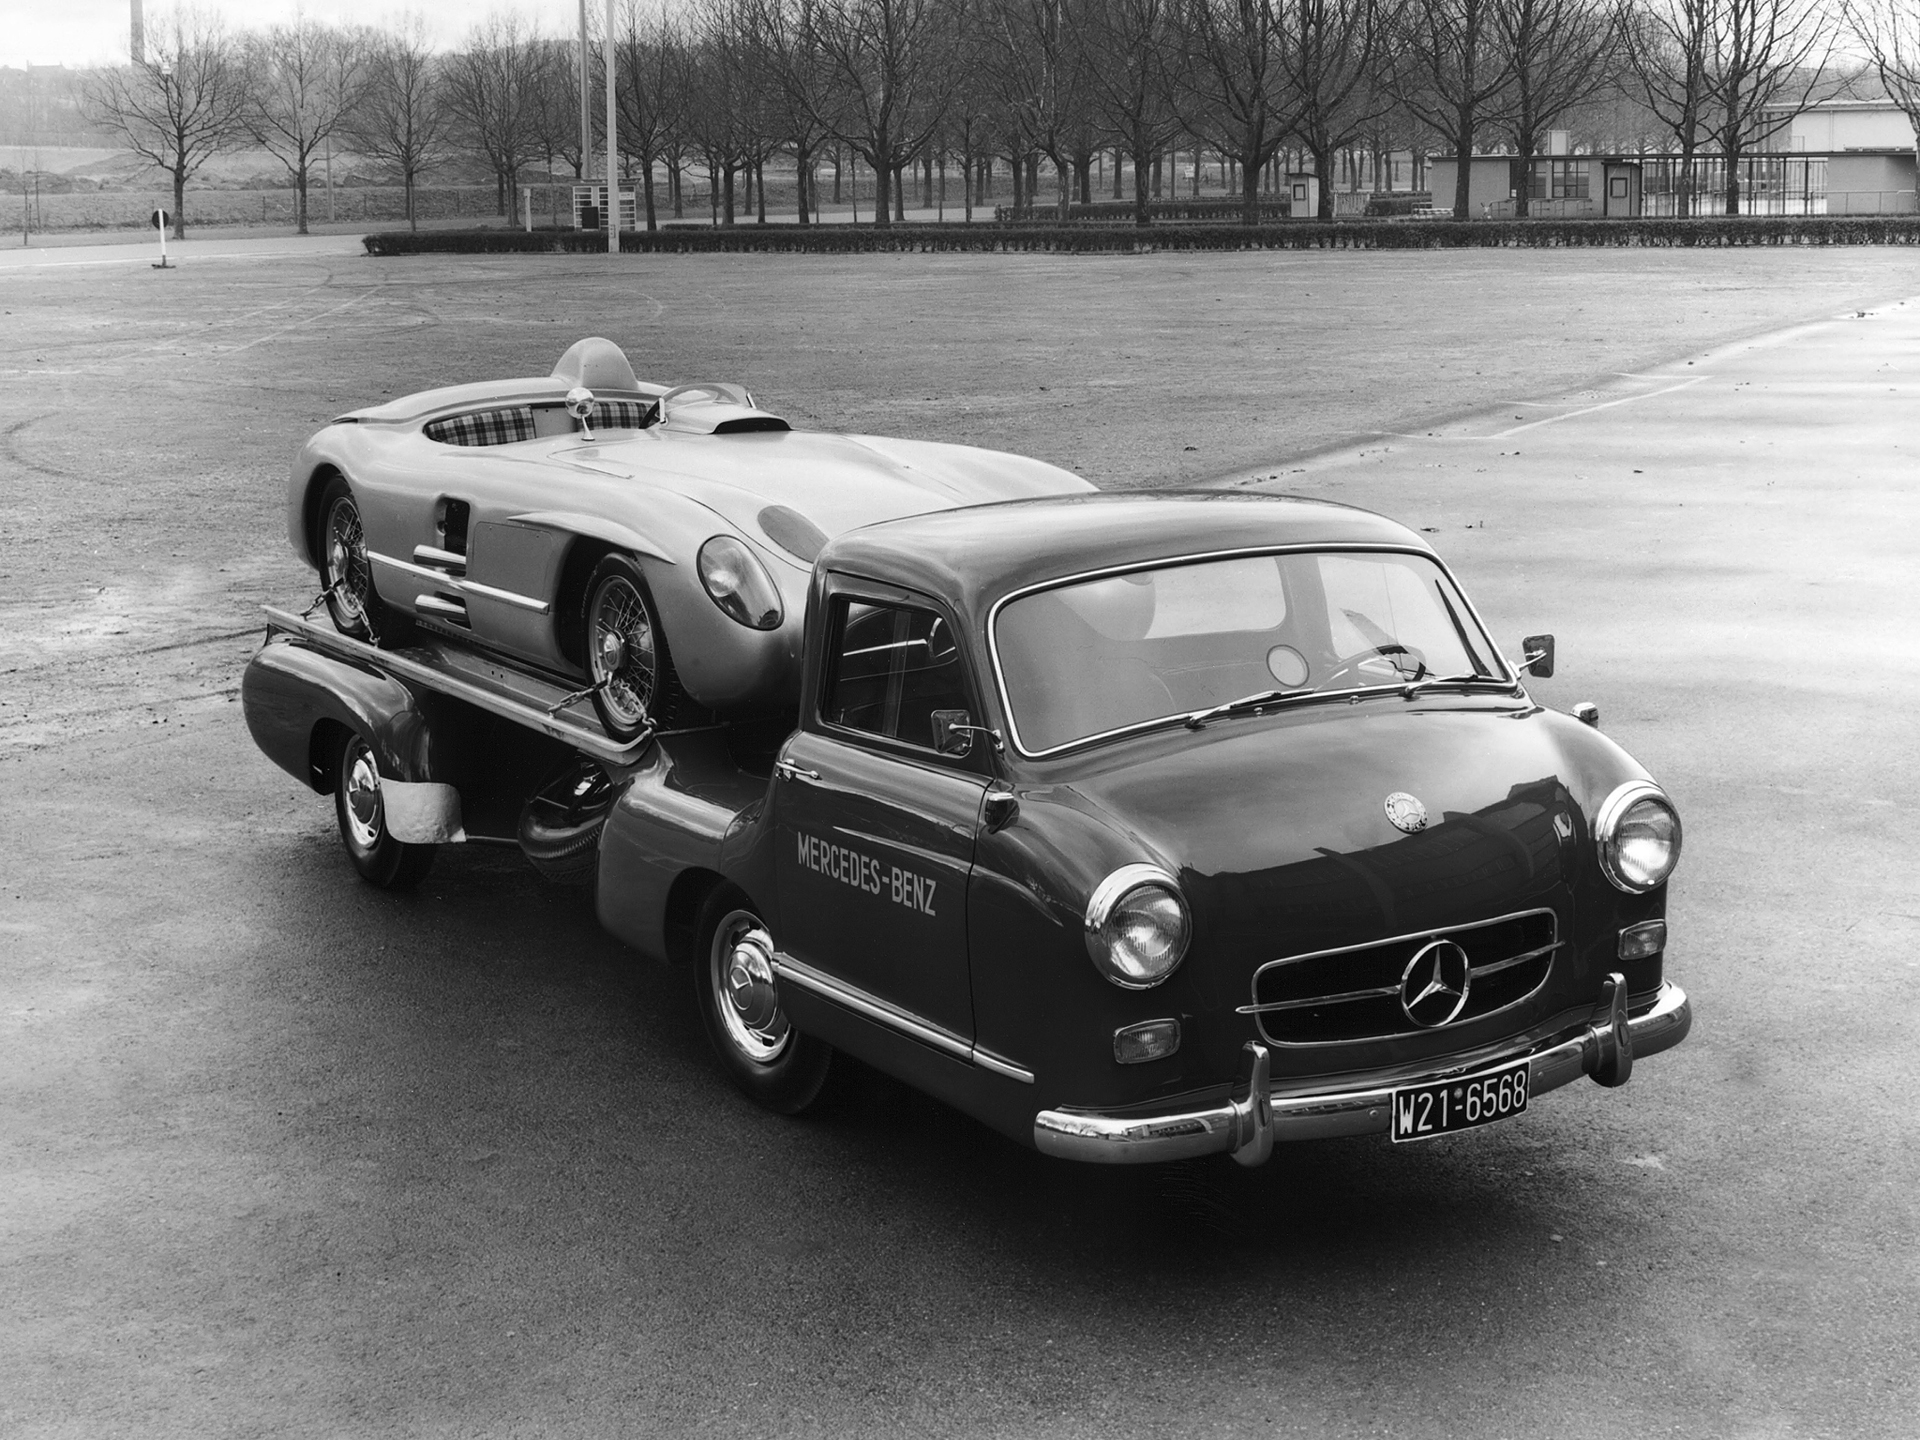 1954, Mercedes, Benz, Blue, Wonder, Transporter, Towtruck, Retro Wallpaper